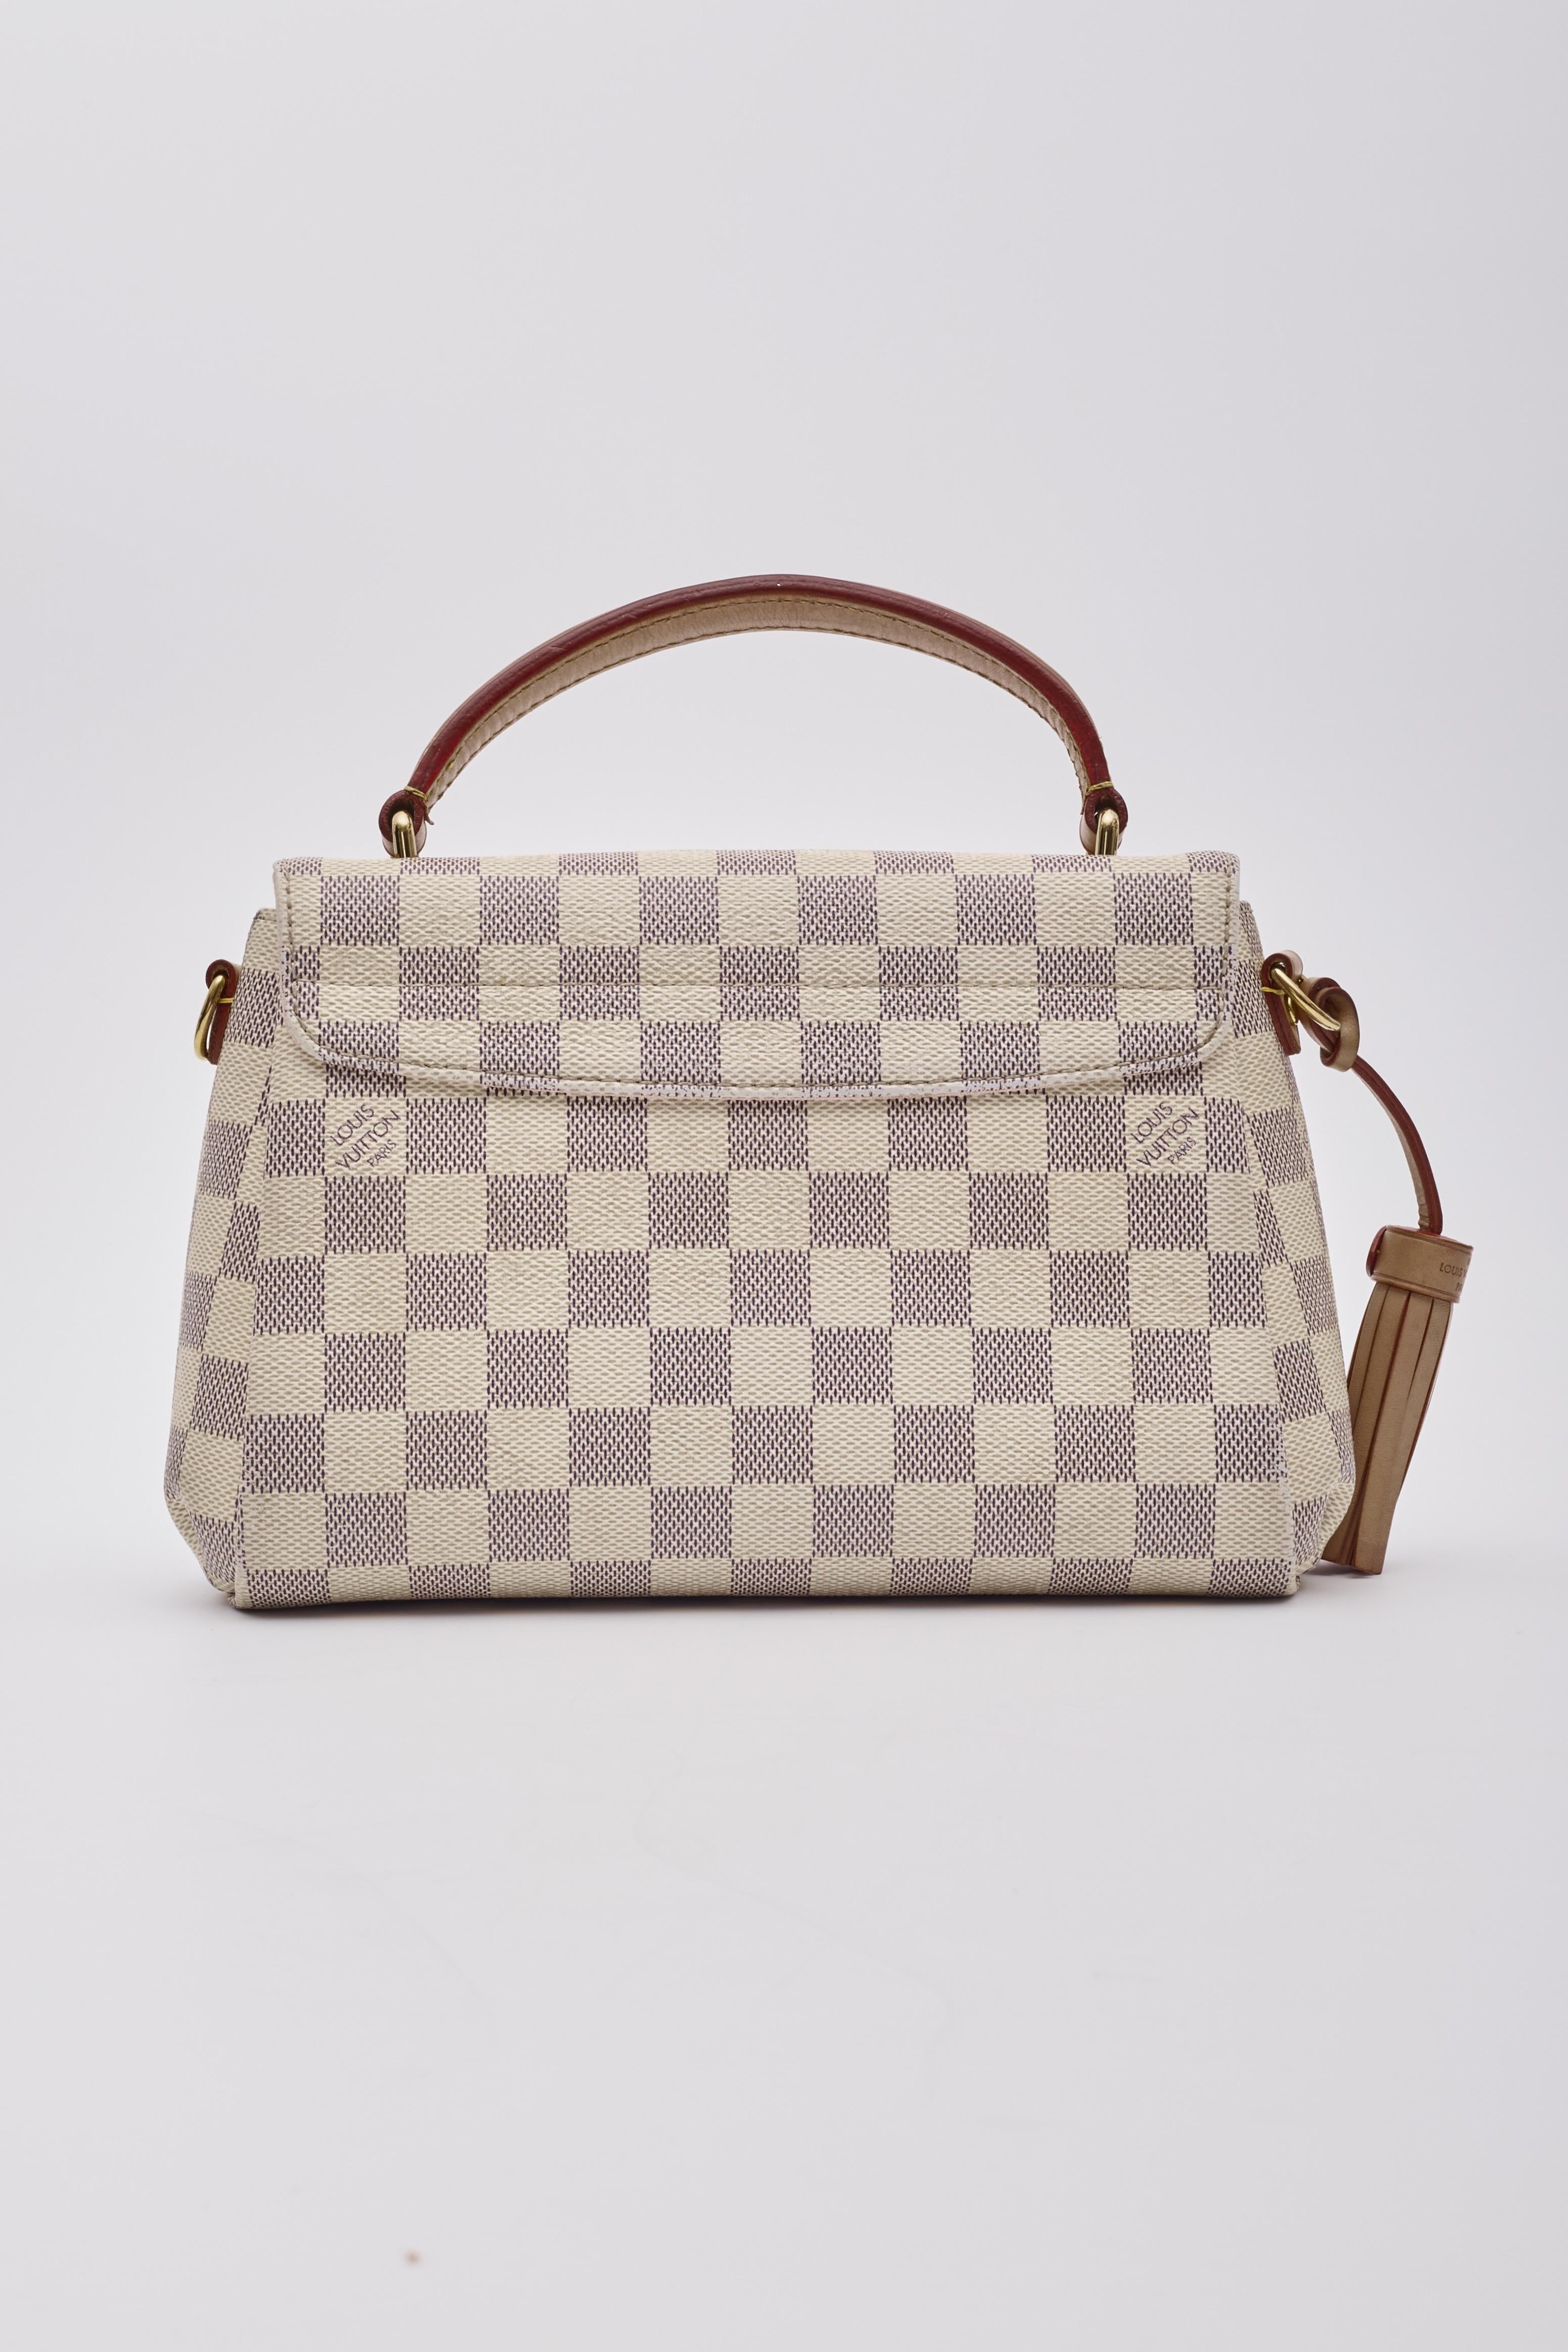 Women's Louis Vuitton Damier Azur Croisette Shoulder Bag For Sale